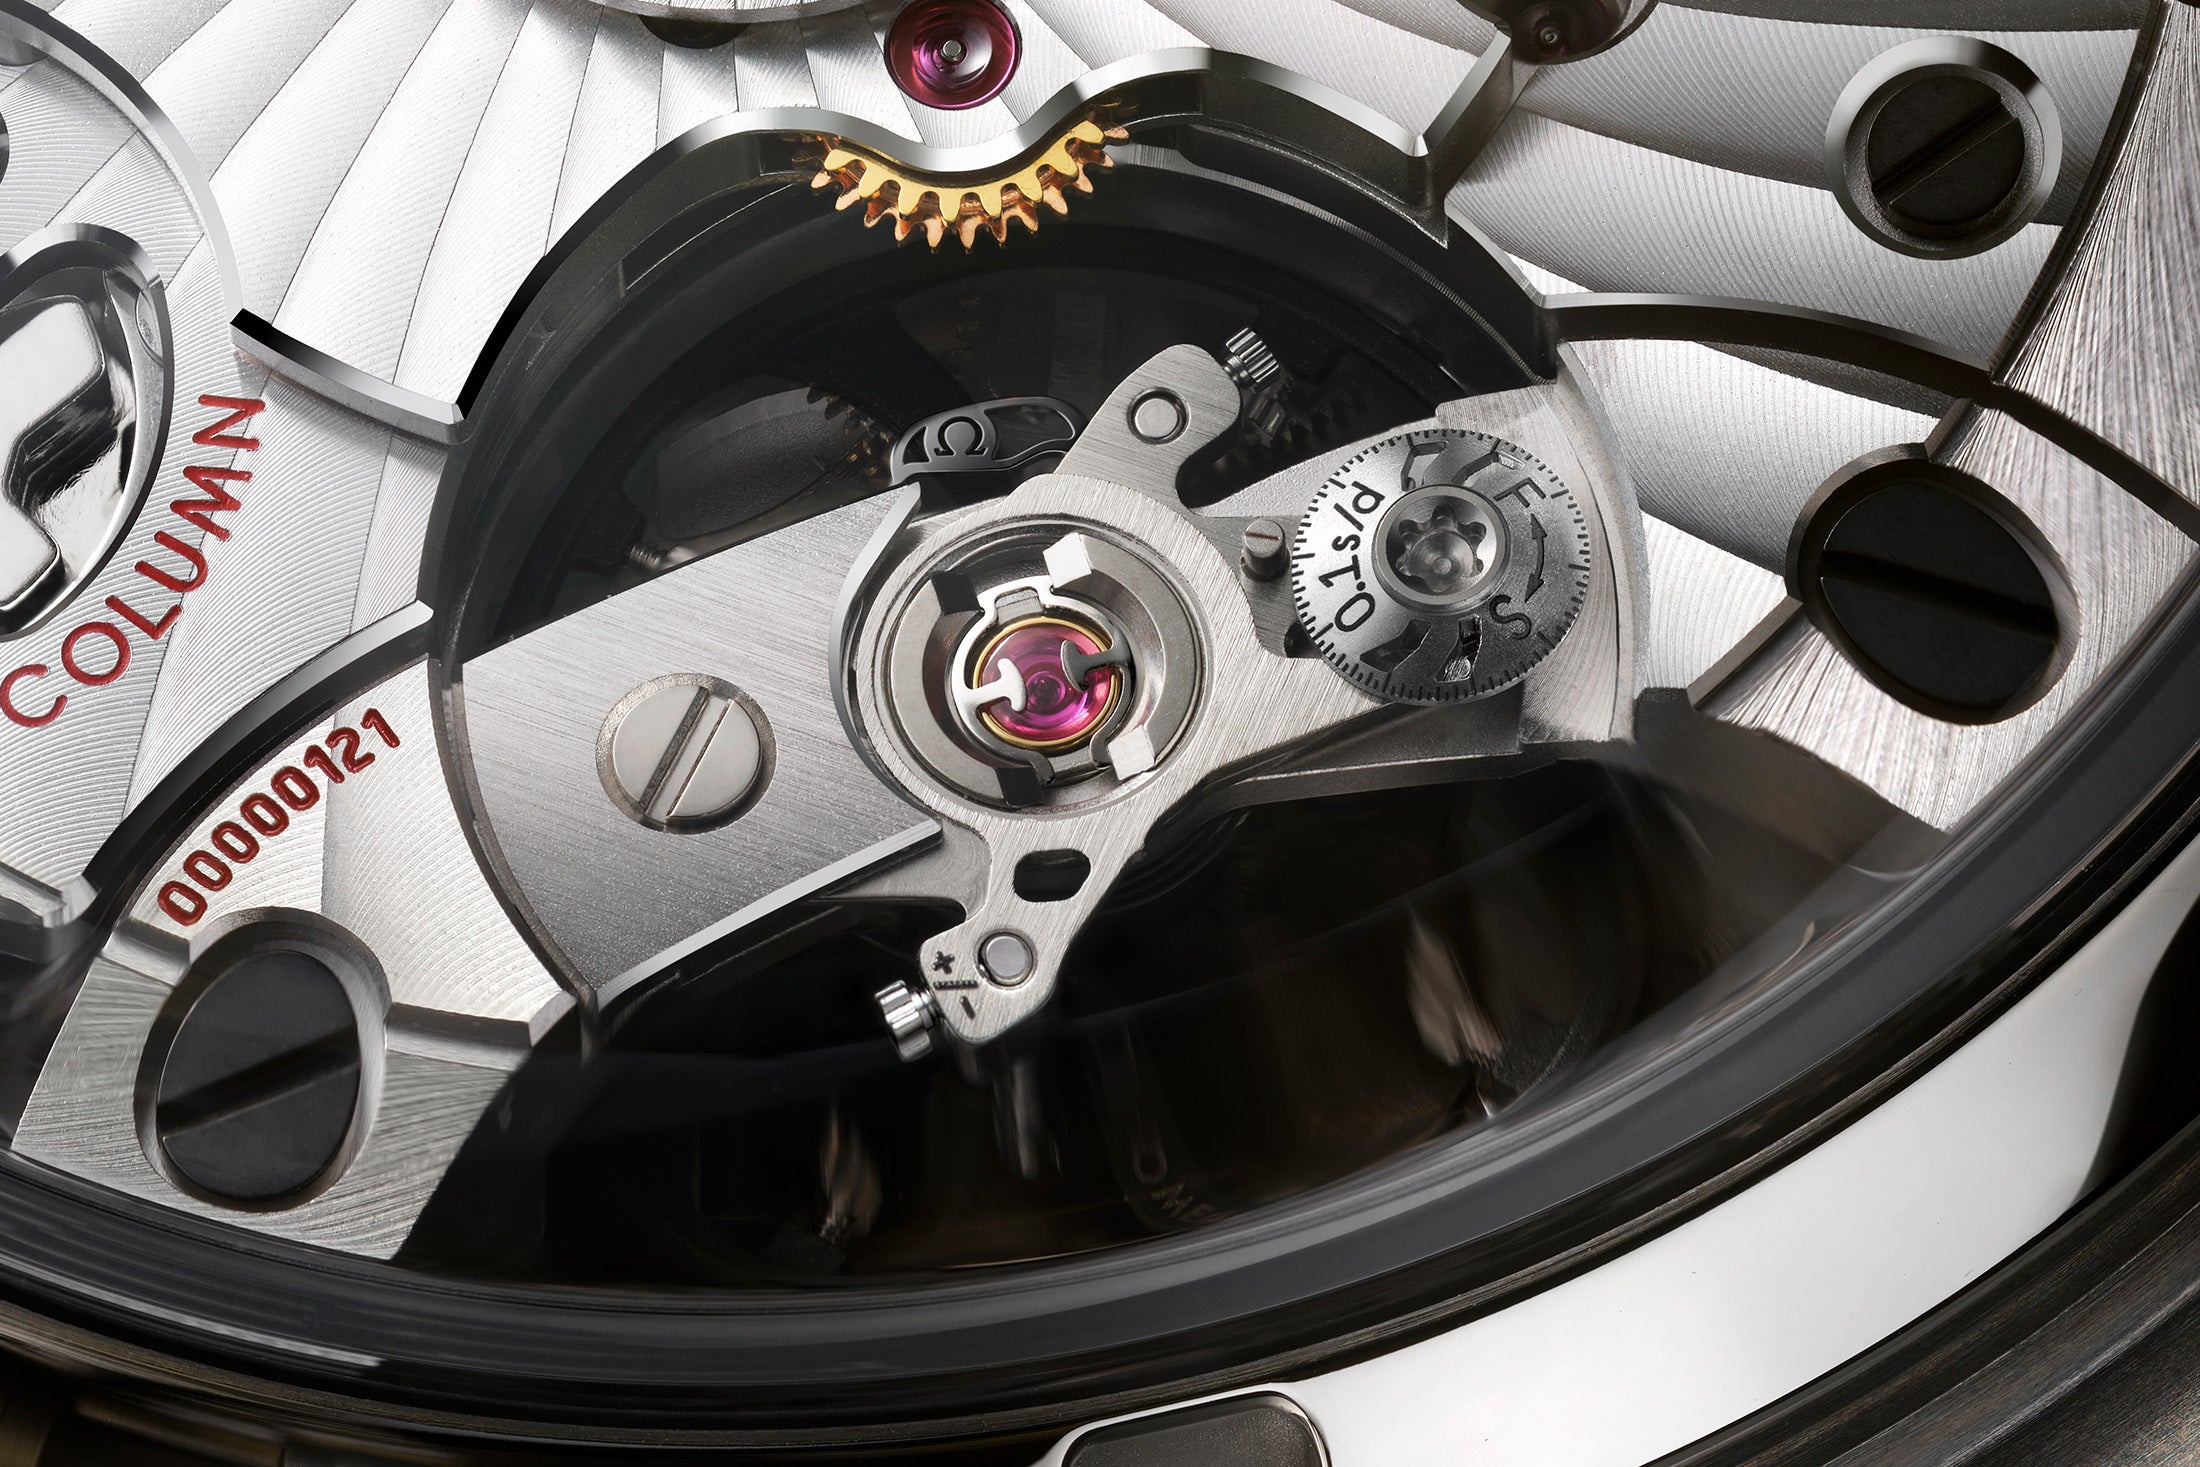 採用 Spirate系統的機芯是OMEGA歐米茄超霸Super Racing計時腕錶中使用的歐米茄 9920 機芯